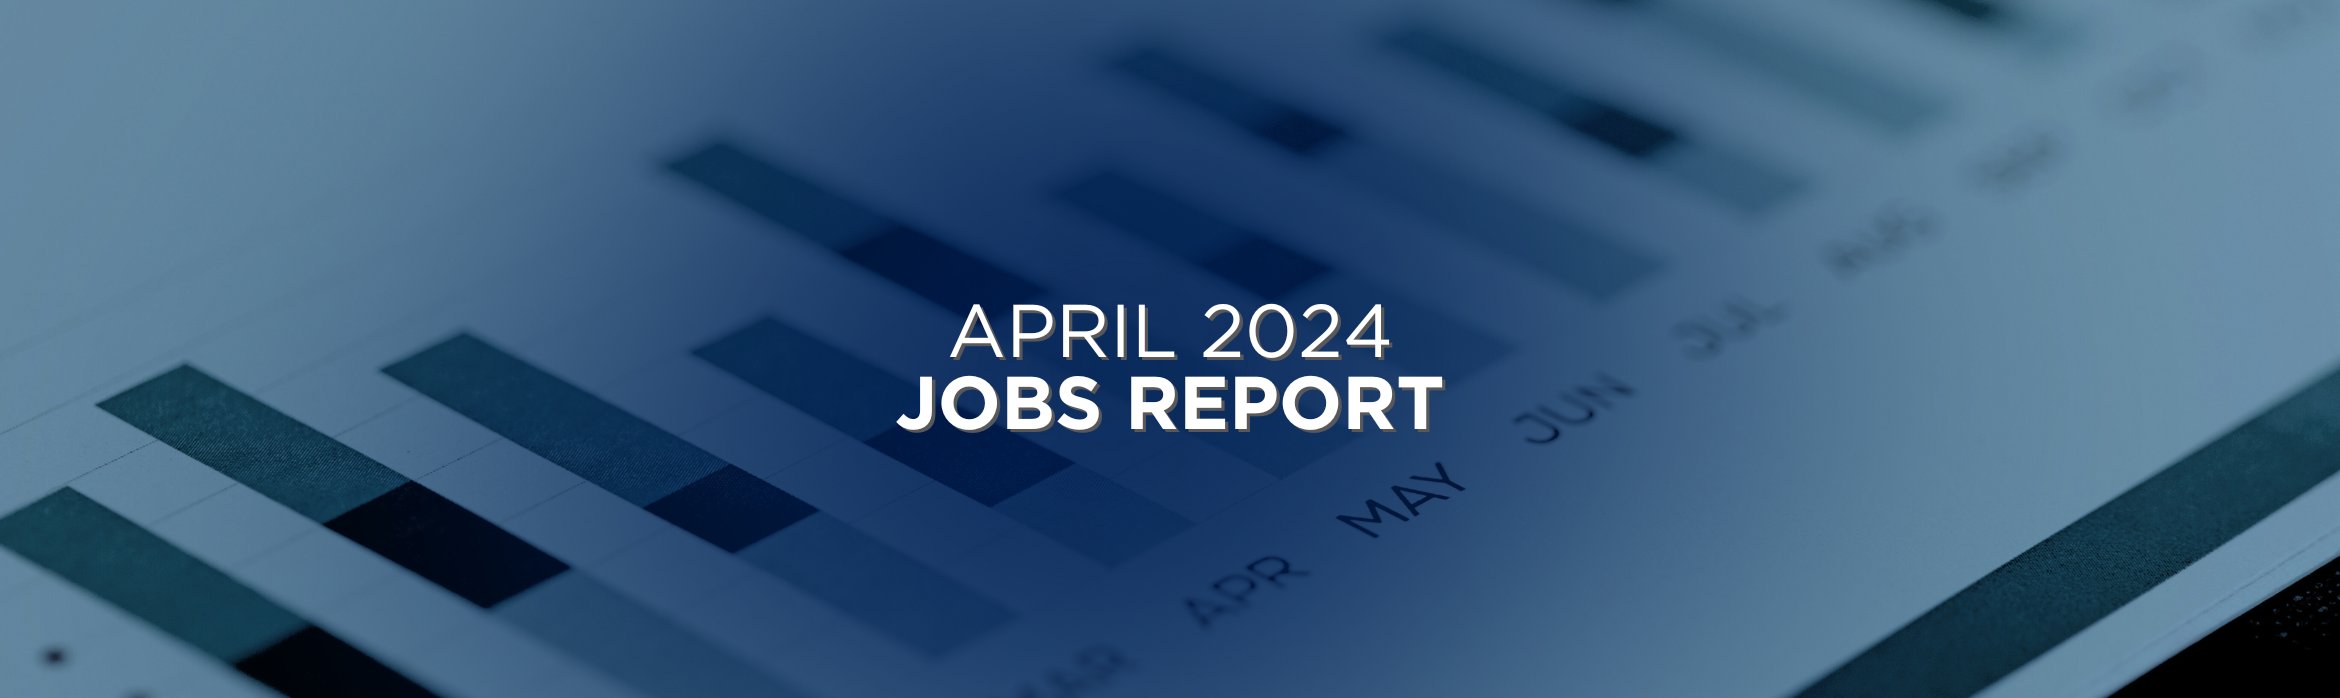 April 2024 Jobs Report Recap